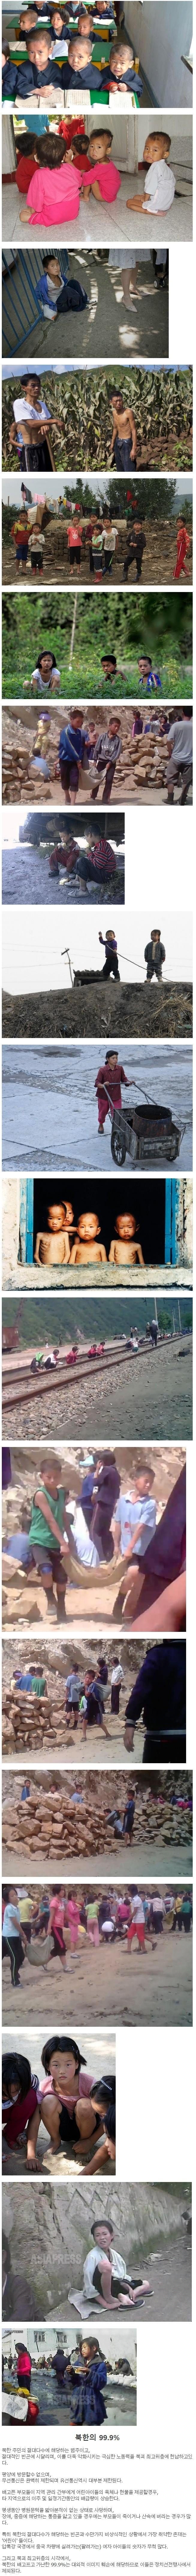 북한의 0.1%와 99.9%의 삶